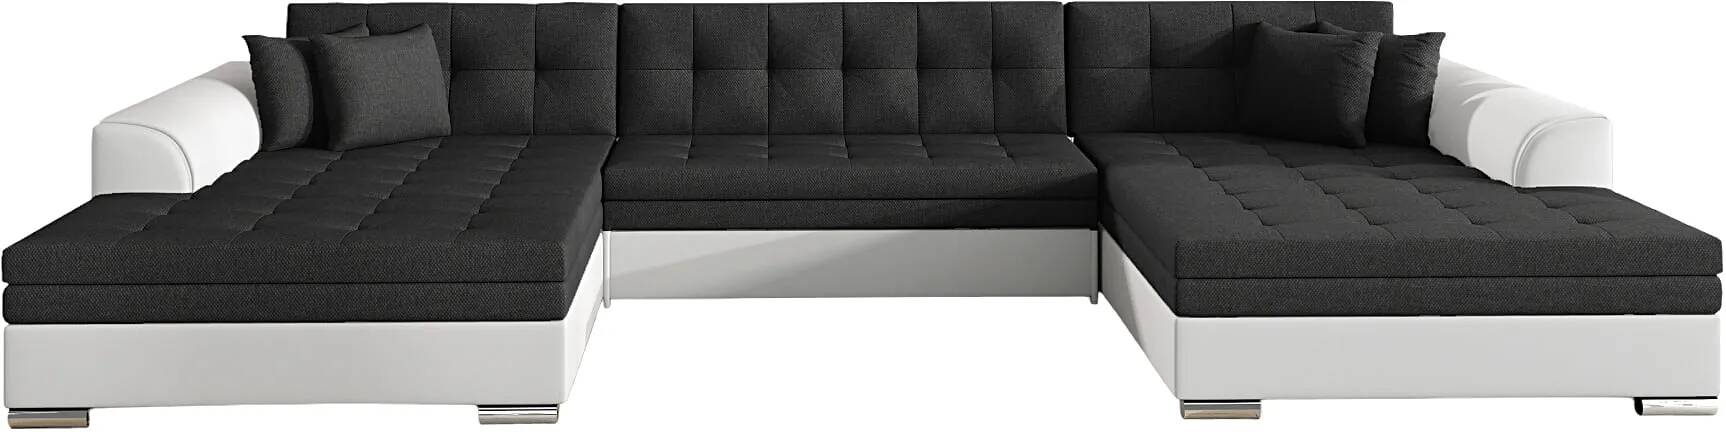 Canapé d'angle convertible en tissu gris foncé et simili cuir blanc